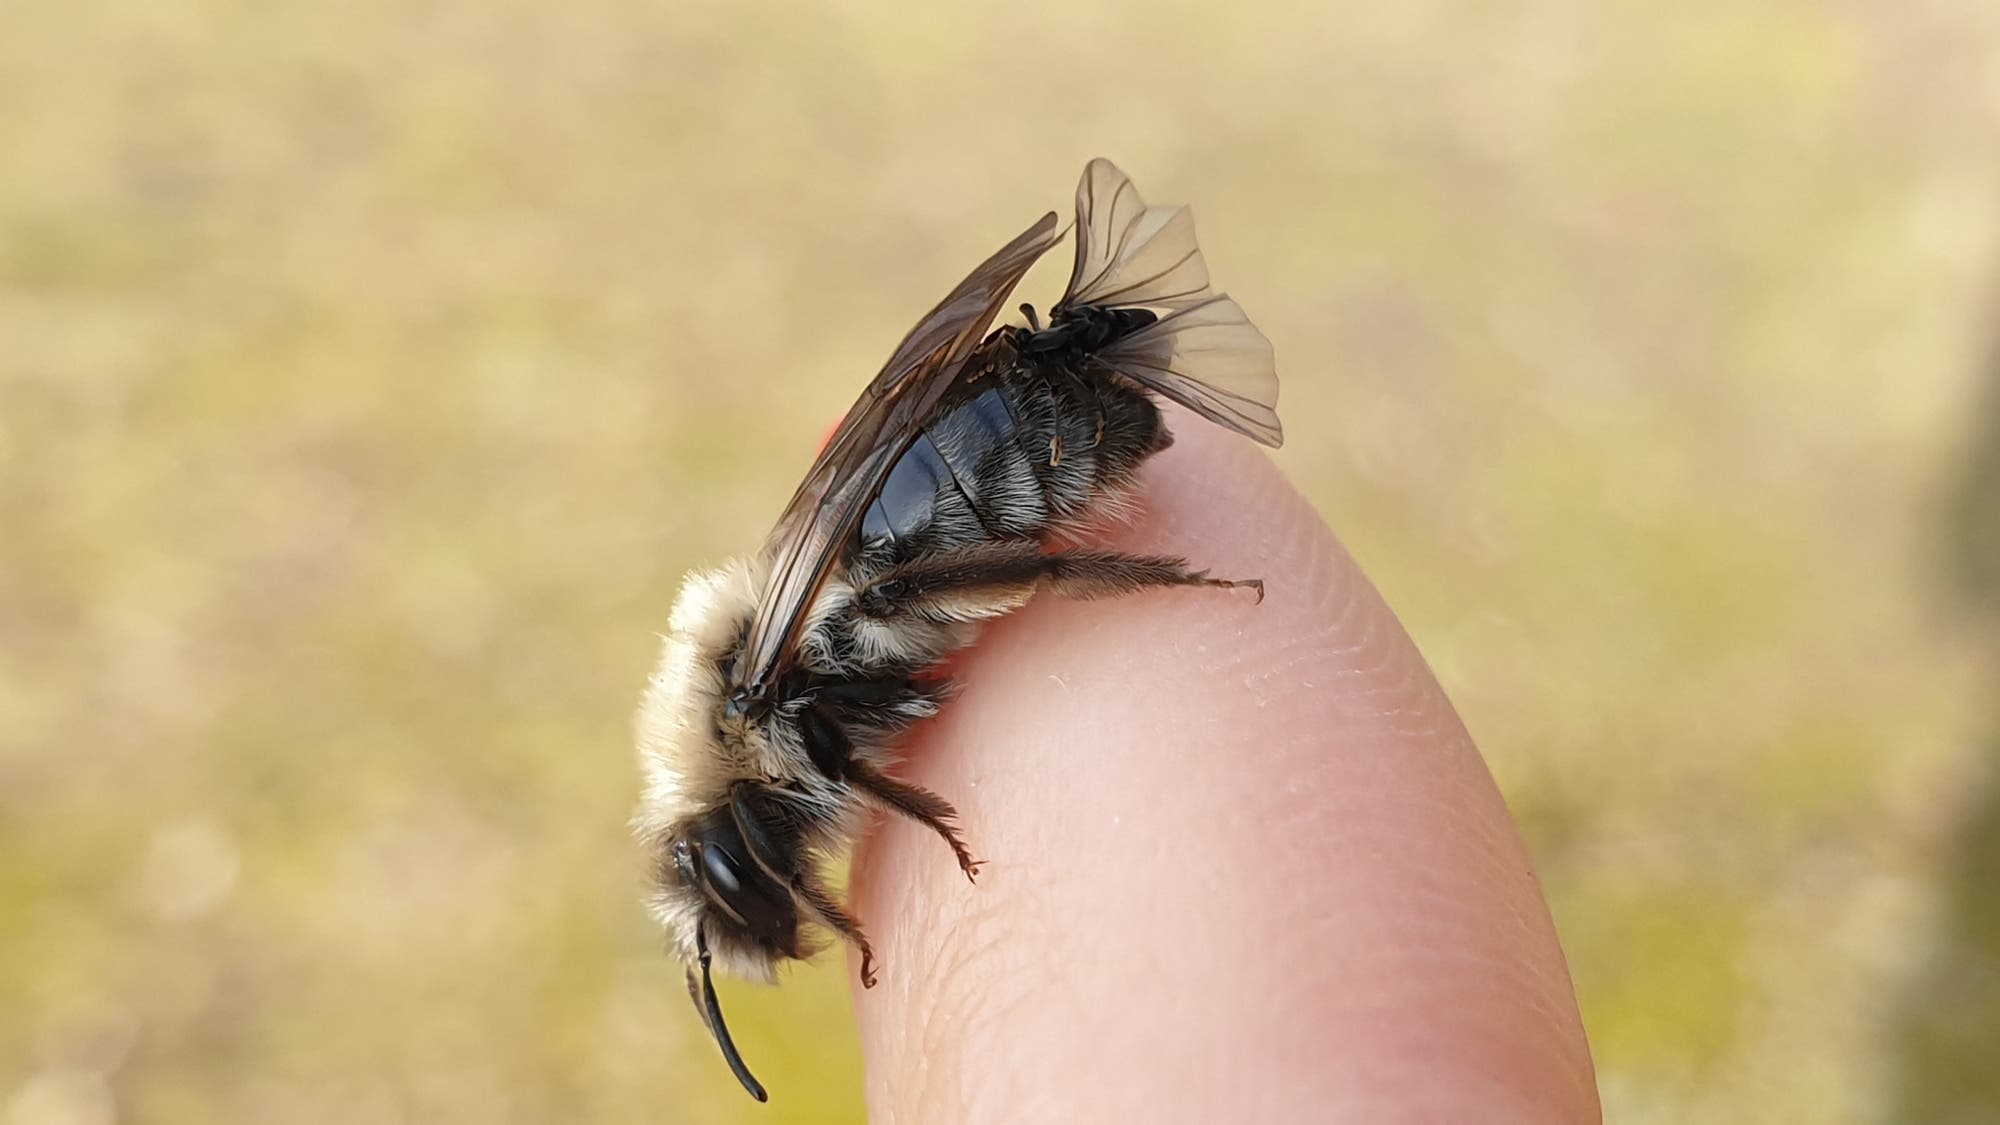 Auf dem Hinterleib einer dunkelbraunen Sandbiene erkennt man die kleinen, durchsichtigen Flügel eines Fächerflüglers. Die Biene sitzt auf dem Finger eines Menschen.